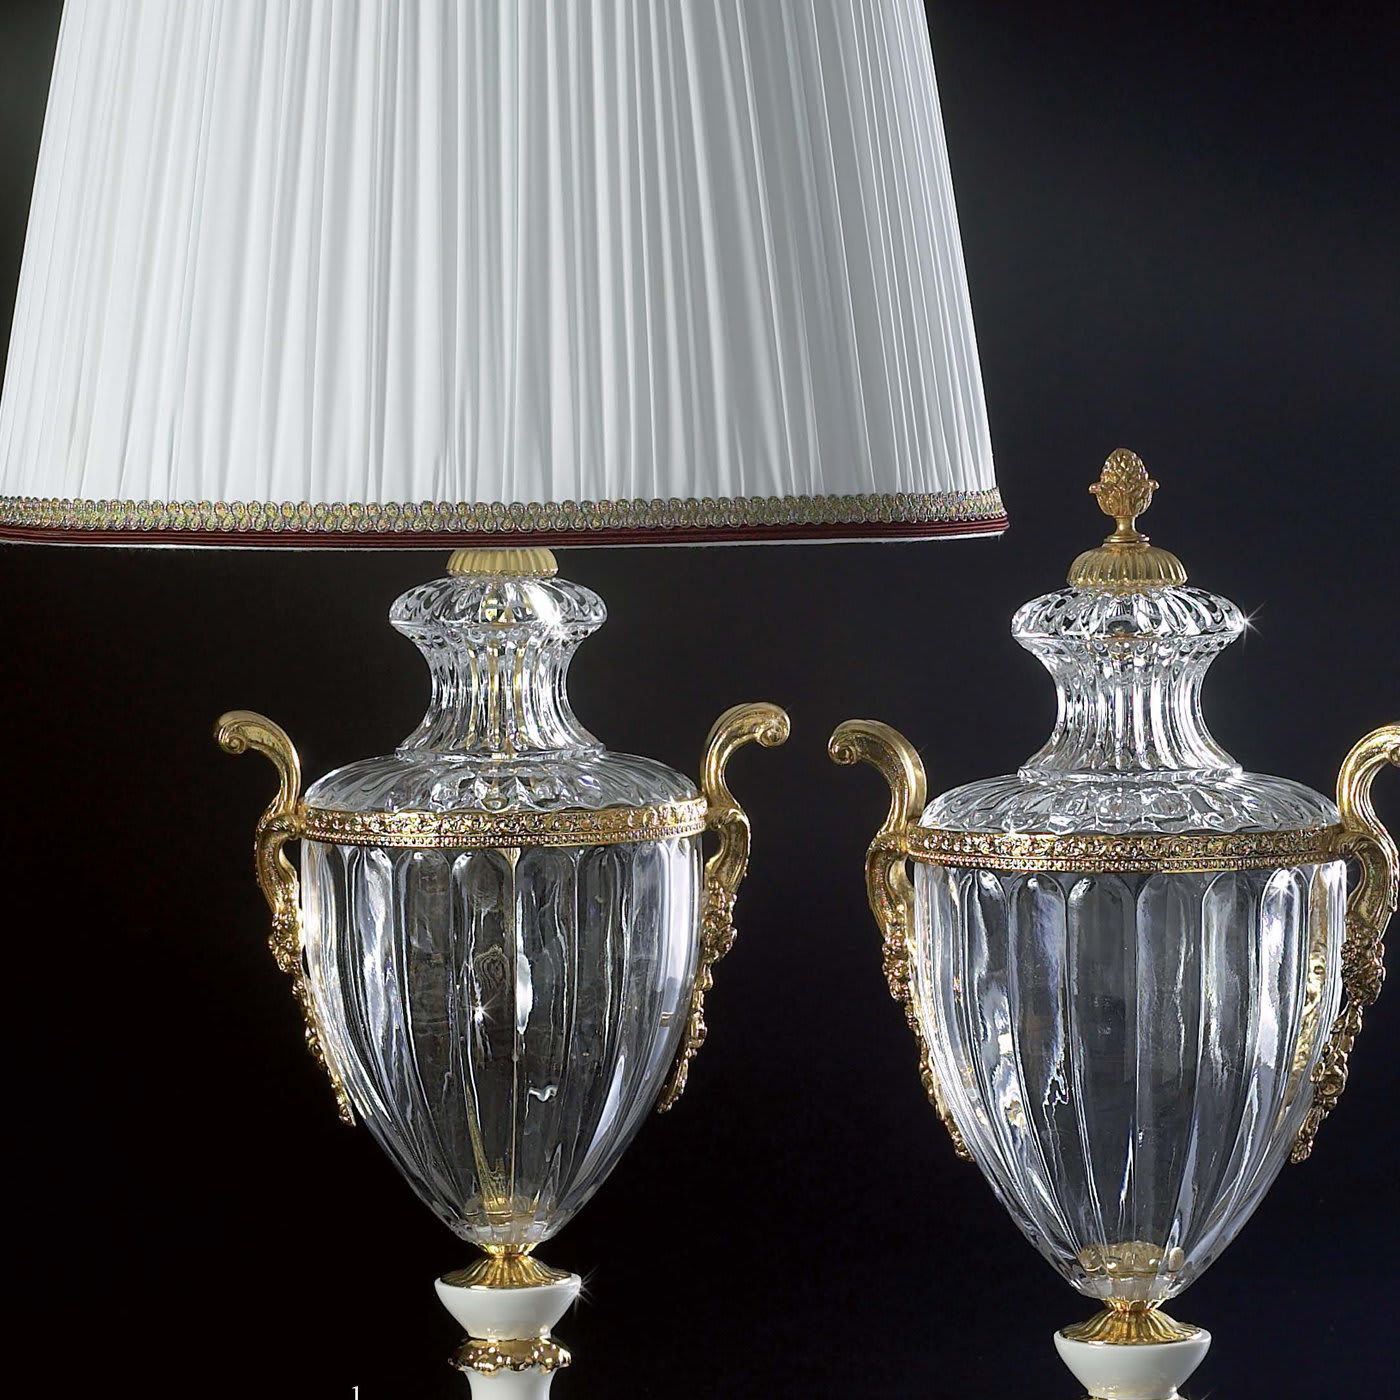 Enry Porcelain Lamp - Creart